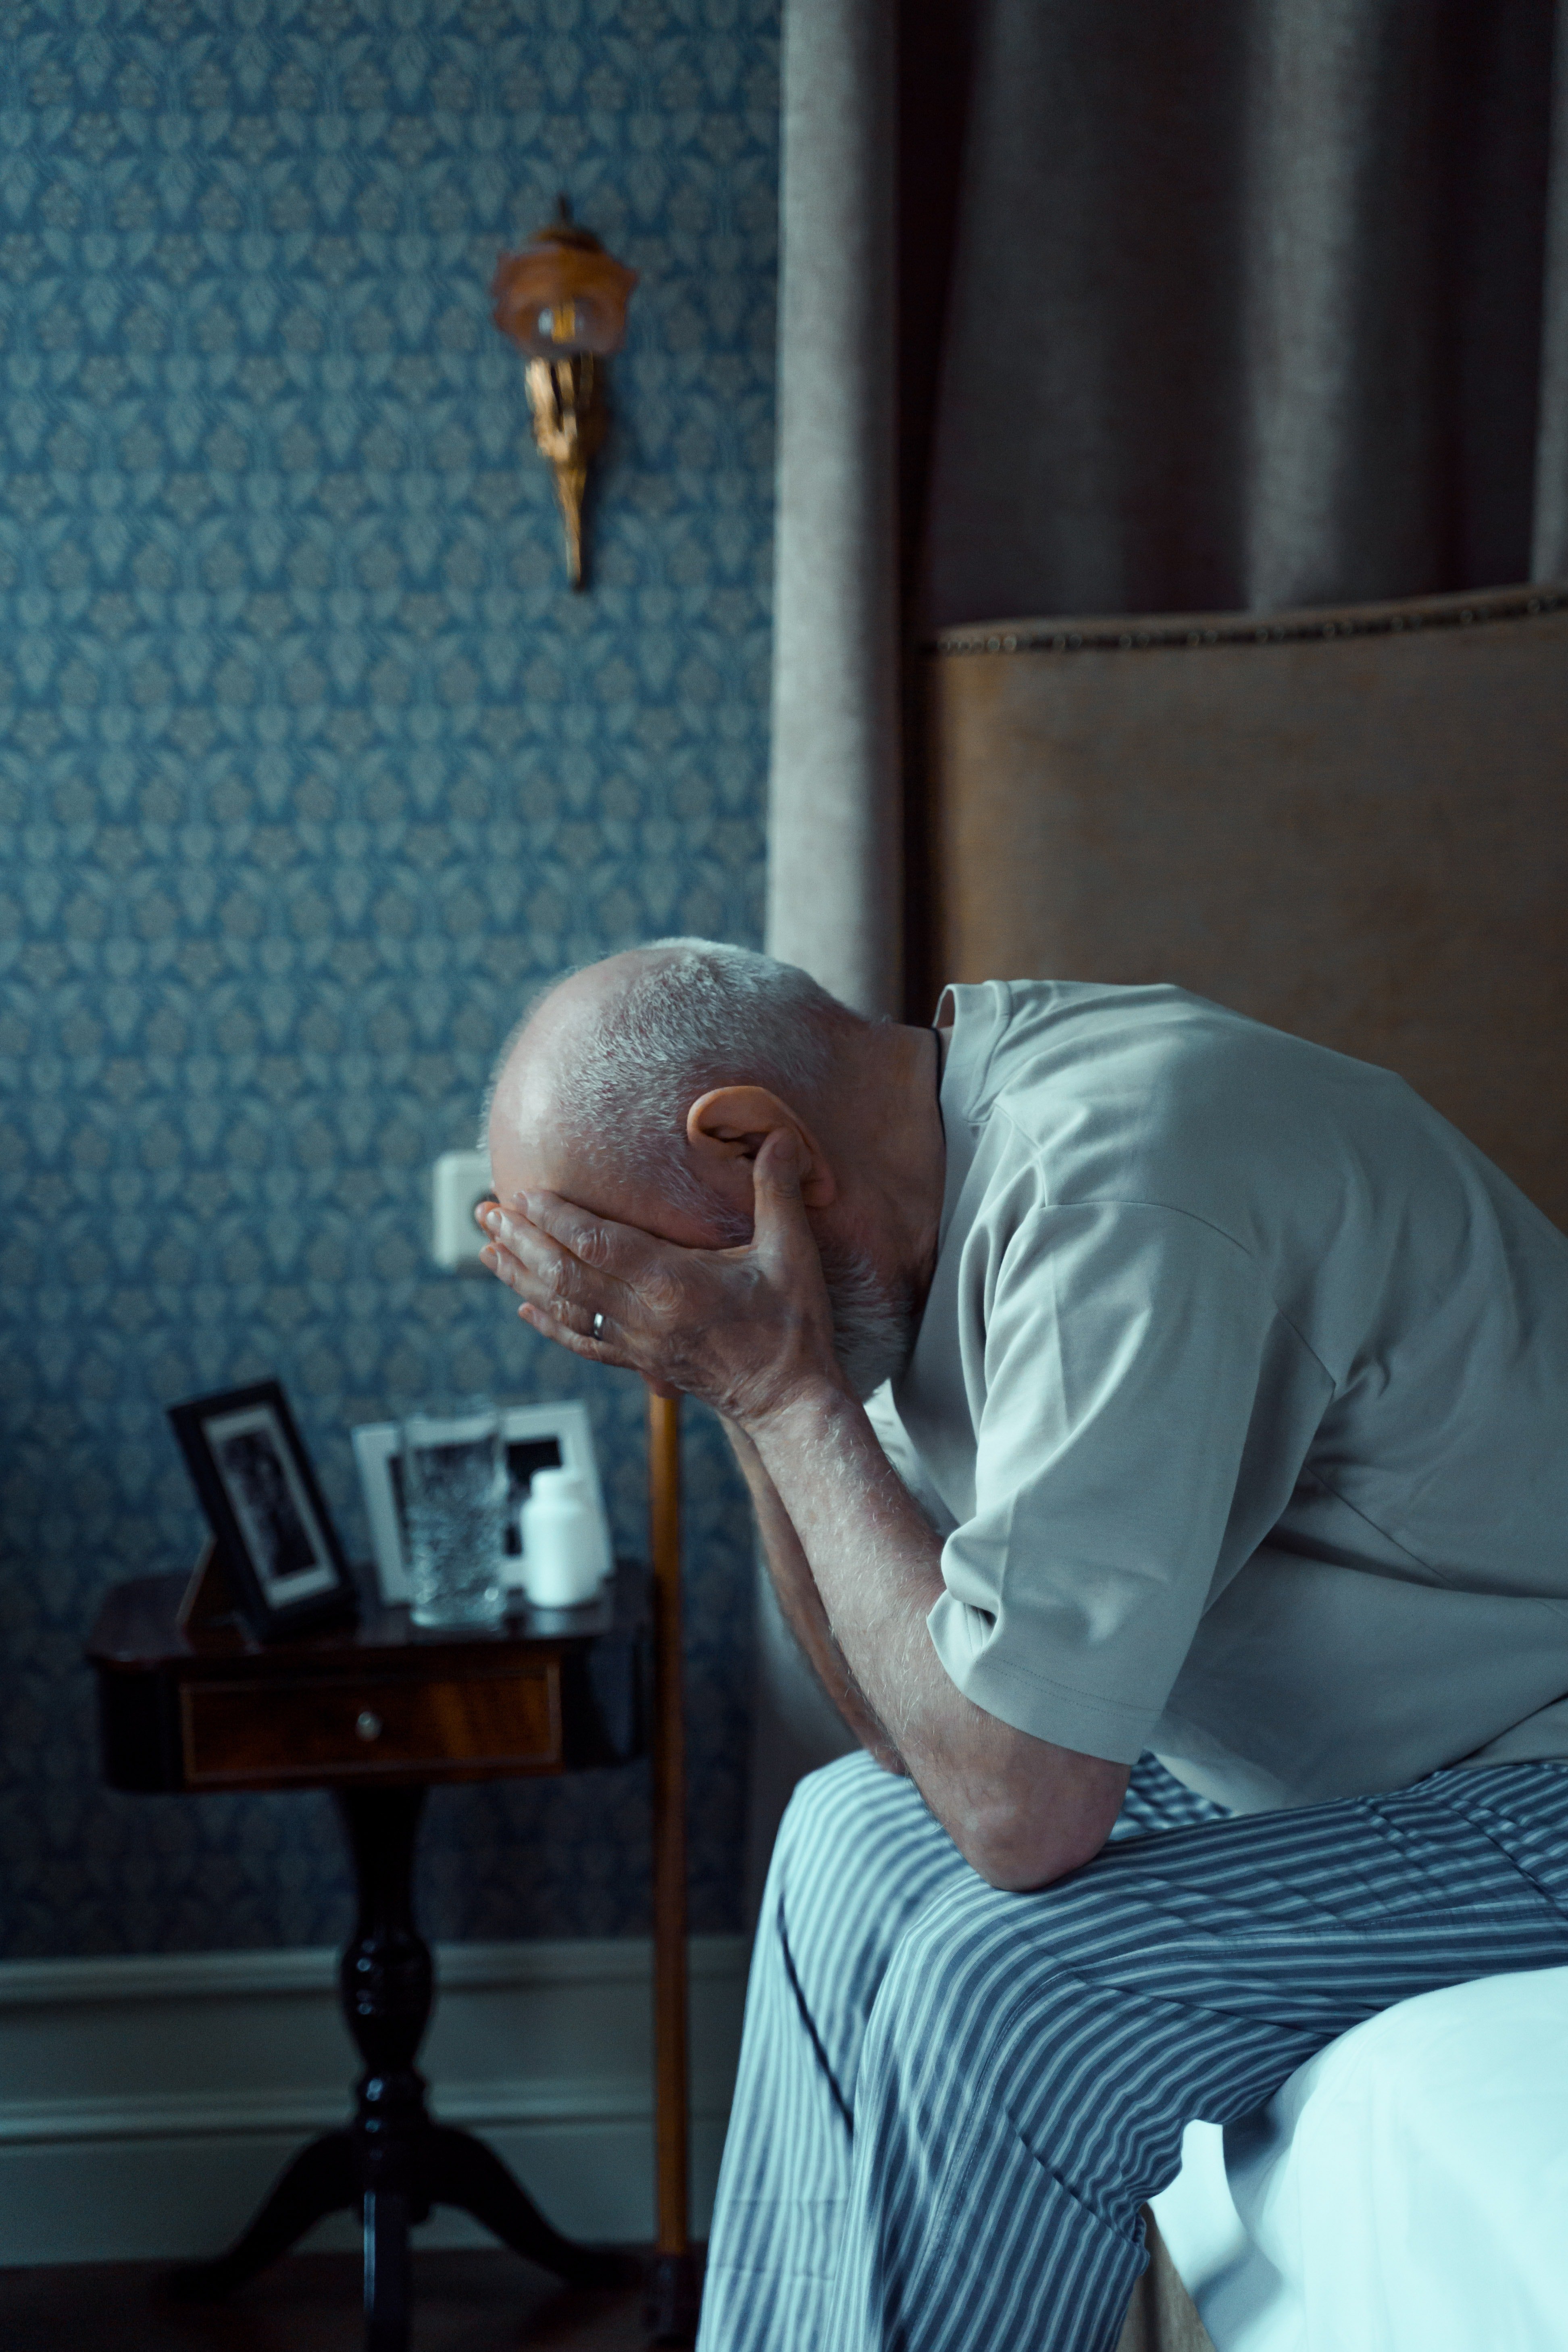 Joe se sentait très triste et déprimé dans la maison de retraite. | Source : Pexels